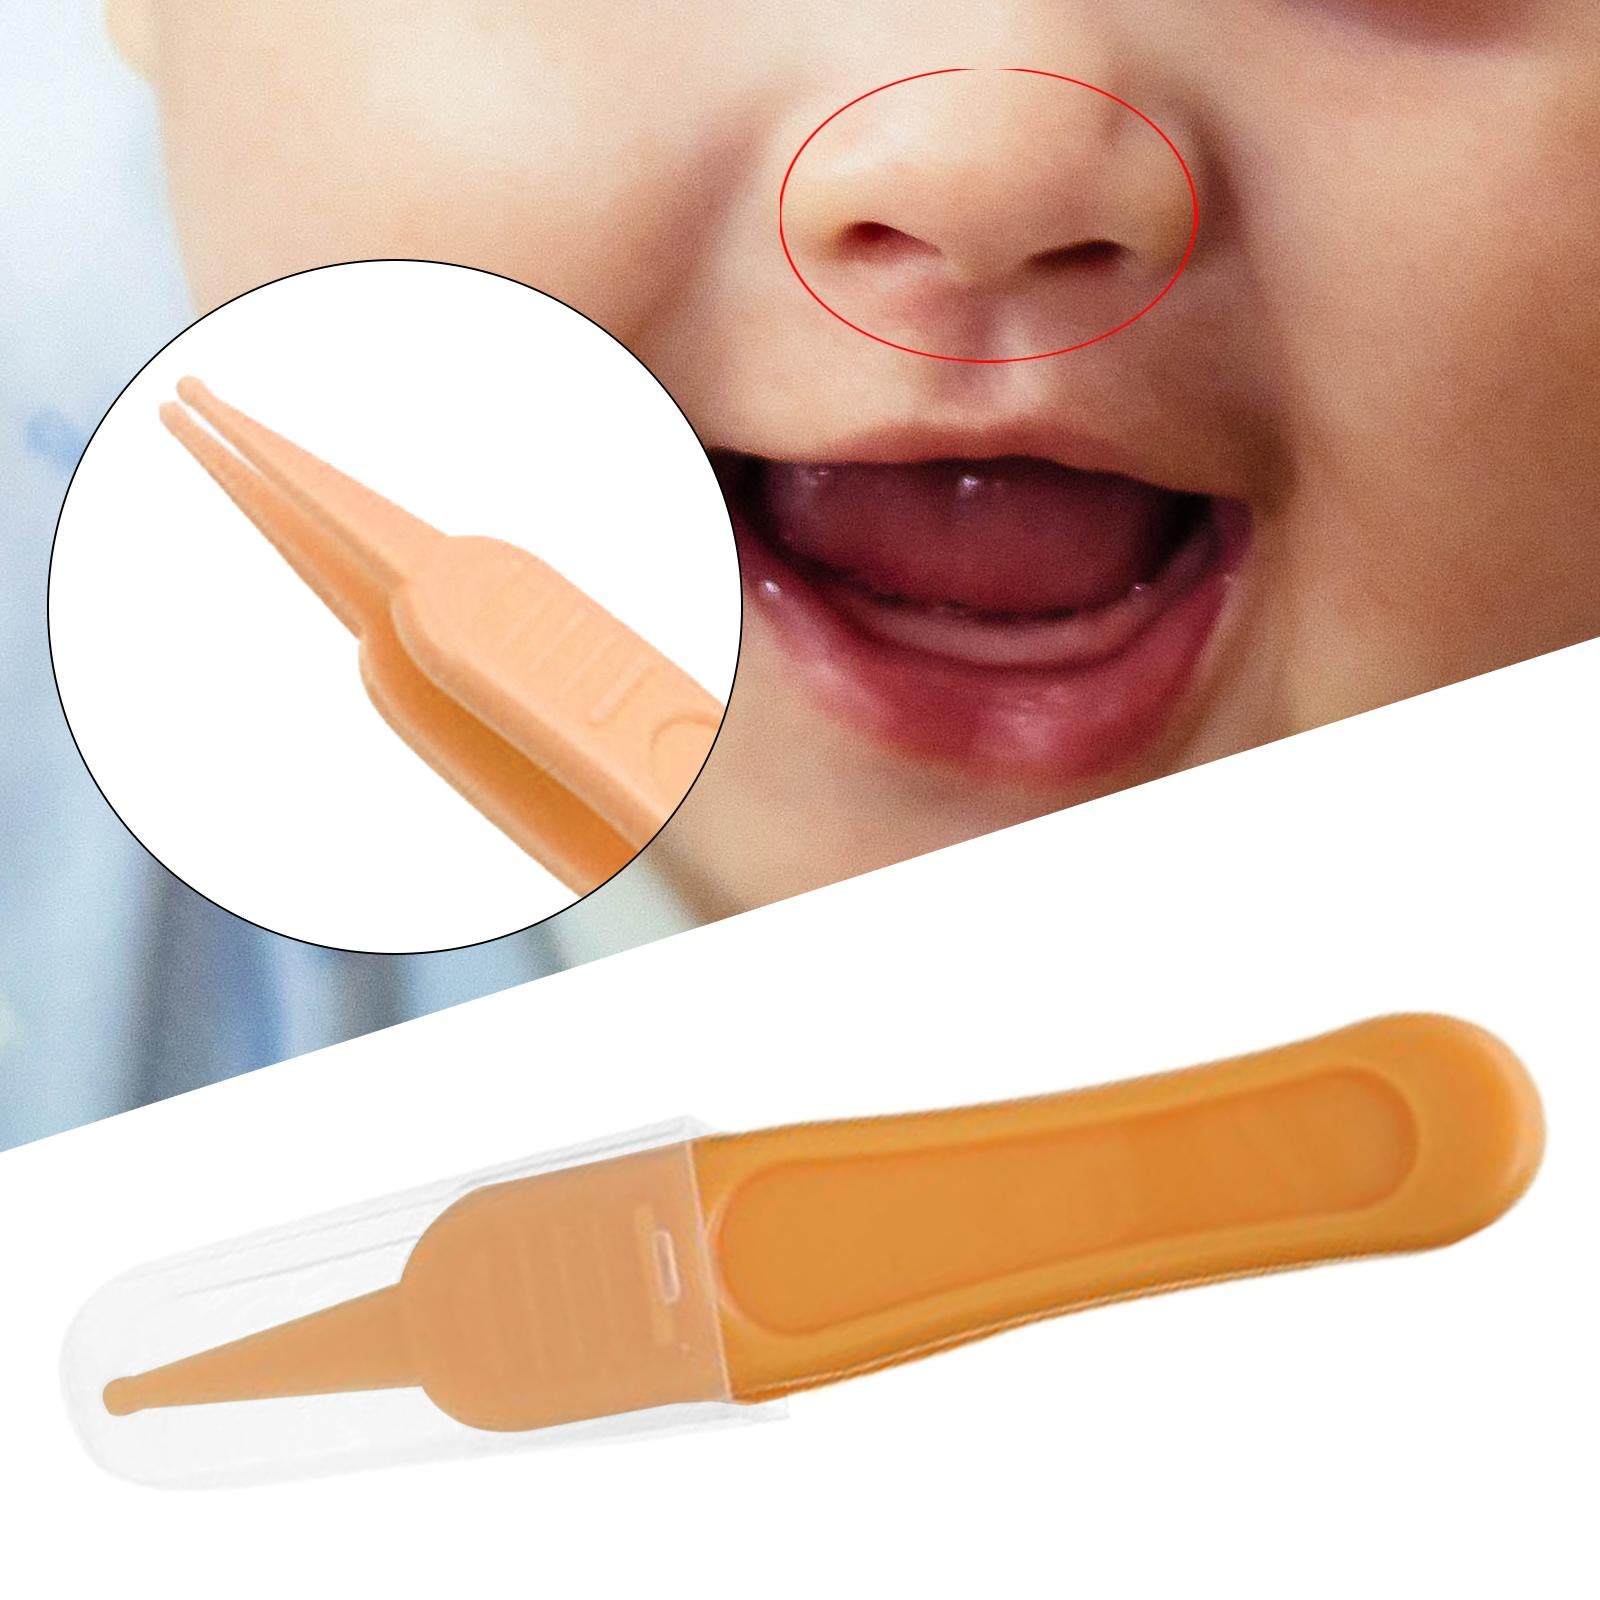 Baby Nose Tweezers Infant Ear Nose Navel Cleaning Tweezers Forceps Yellow